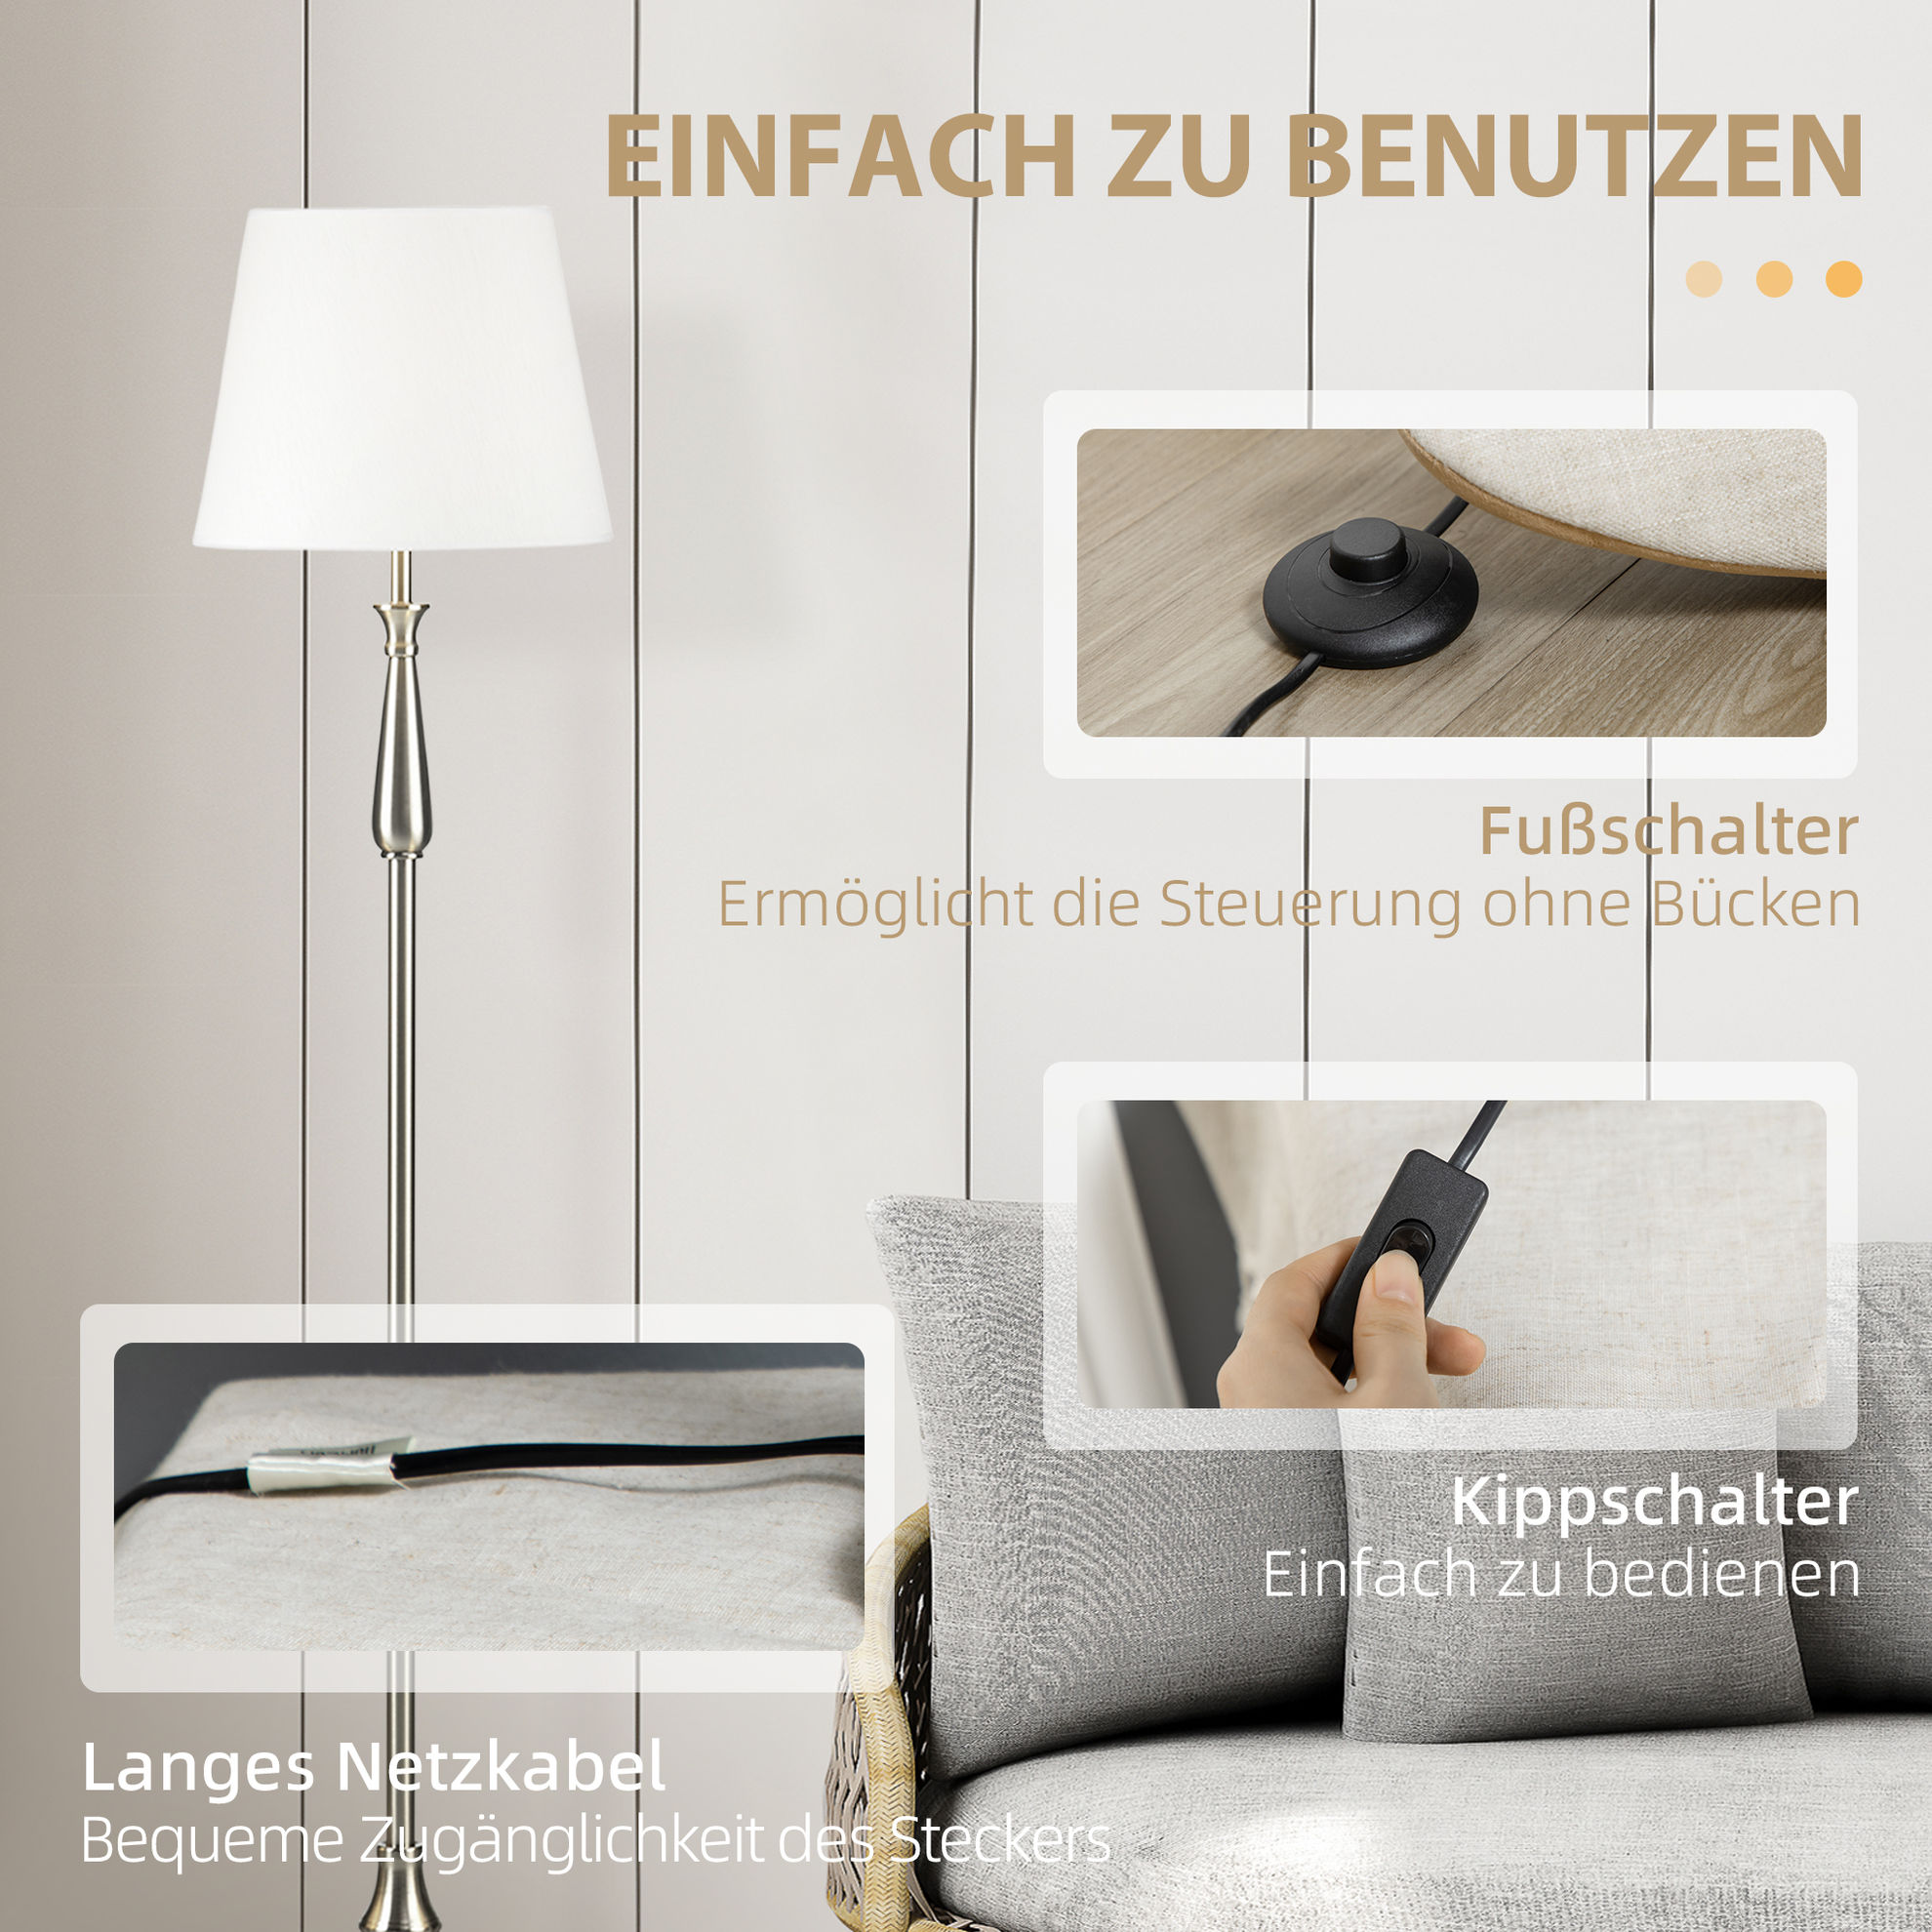 Stehlampen-Set mit E37 Fassung weiß Farbe: cremeweiß | Weltbild.de